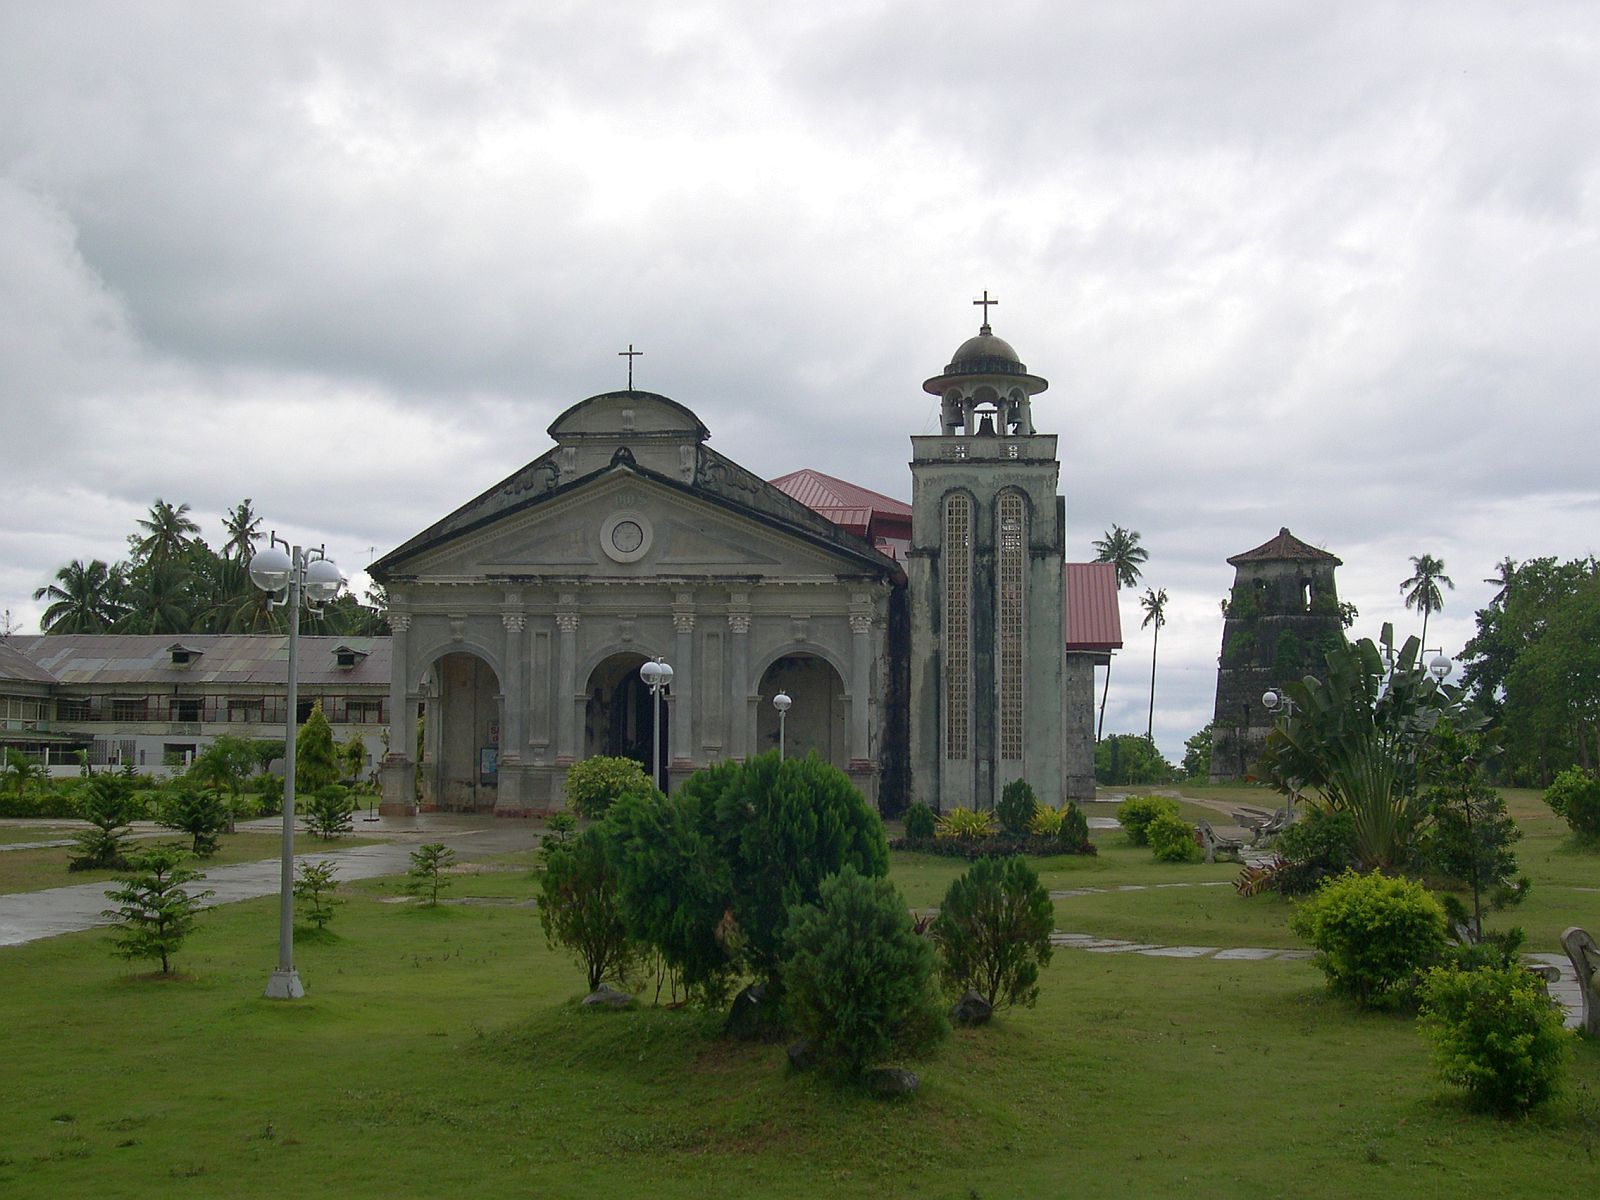 PHILIPPINEN REISEN - ORTE - BOHOL - Touristische Ortsbeschreibung für Panglao